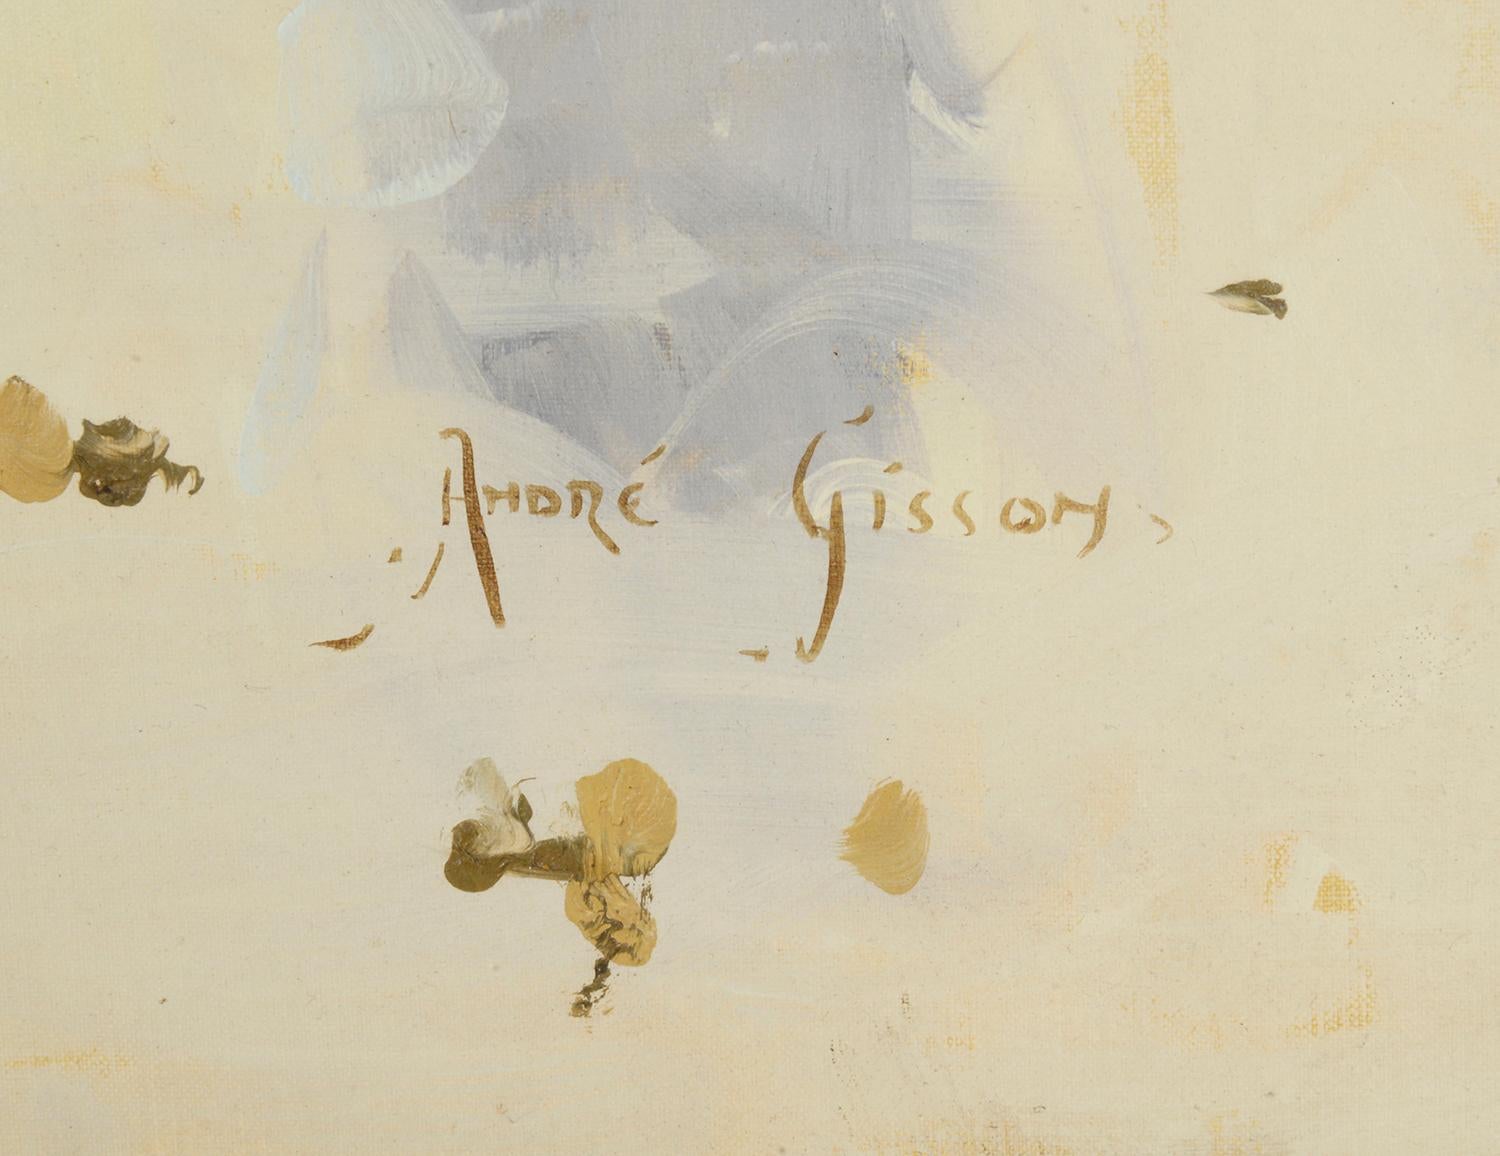 Öl auf Leinwand Studie des Arc de Triomphe von; Andre Gisson, (1928-2003)
Andre Gisson wurde unter dem Namen Anders Gittelson 1921 in Brooklyn, New York, geboren. Als führender amerikanischer Realist ist er vor allem für seine Landschafts-,